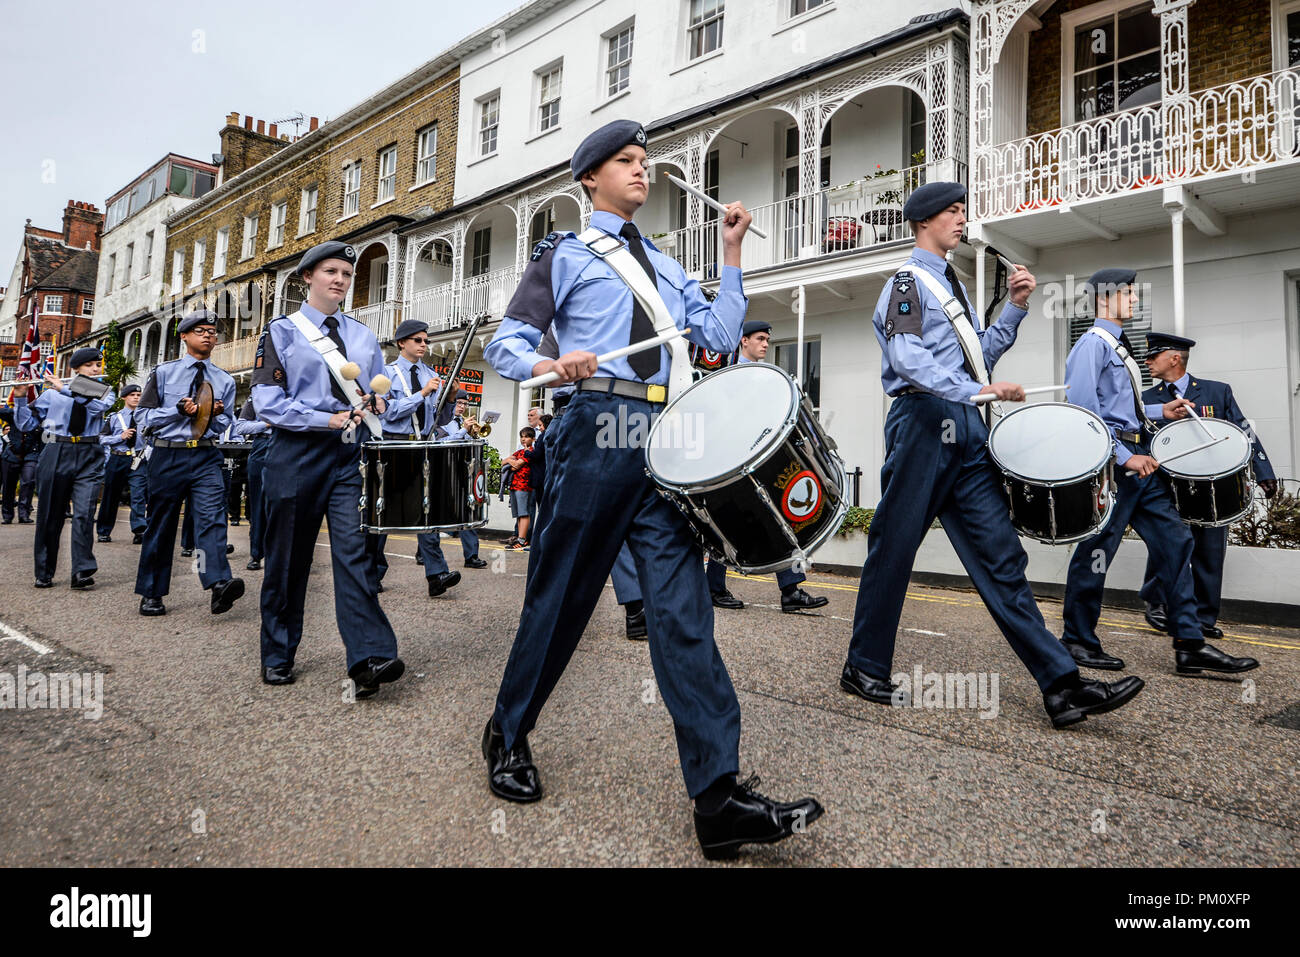 Battle of Britain Day Parade. 1312 (Southend on Sea) Cadets de l'Escadron a mené une marche de la Royal Naval et Militaire sur terrasse royale Club à St John's Church, à Southend on Sea, où un service de commémoration a eu lieu Banque D'Images